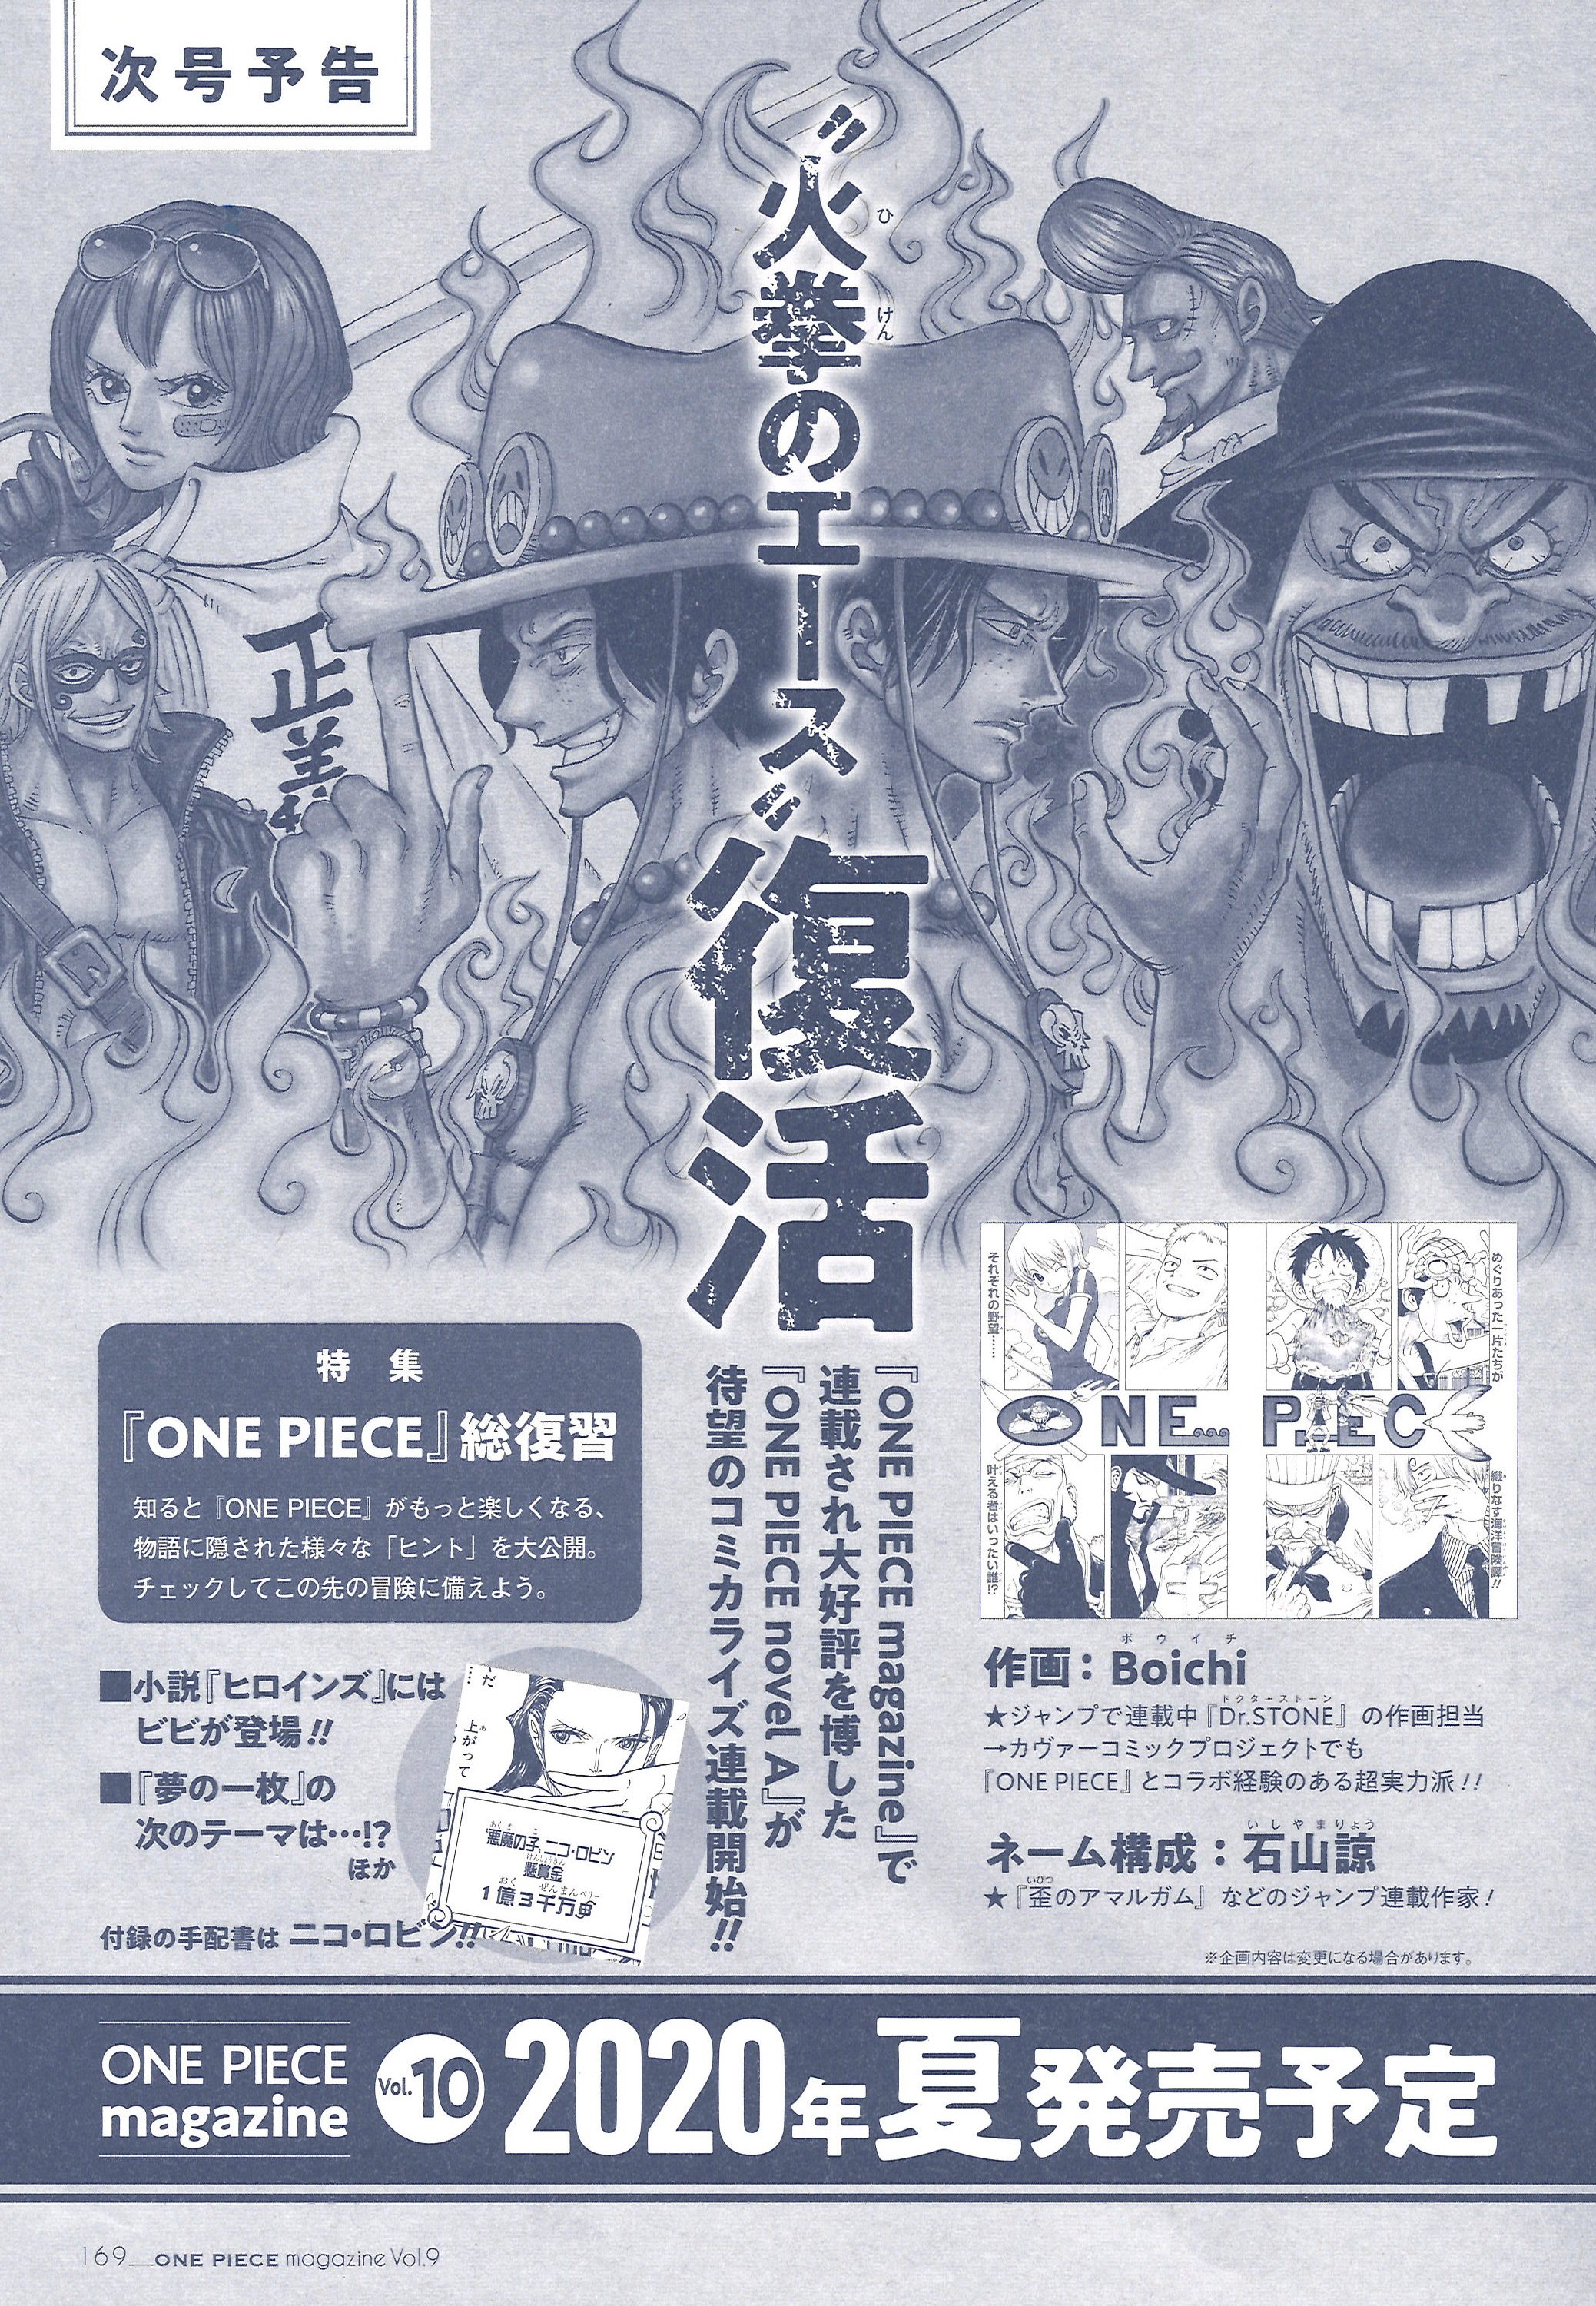 ワンピース マガジン 公式 次号 ワンピース マガジンvol 10 にて あの One Piece Novel A エース がついにコミカライズ連載スタート 作画は Dr Stone のboichi先生が担当してくださいます 超ビッグなプロジェクトに どうぞご期待ください